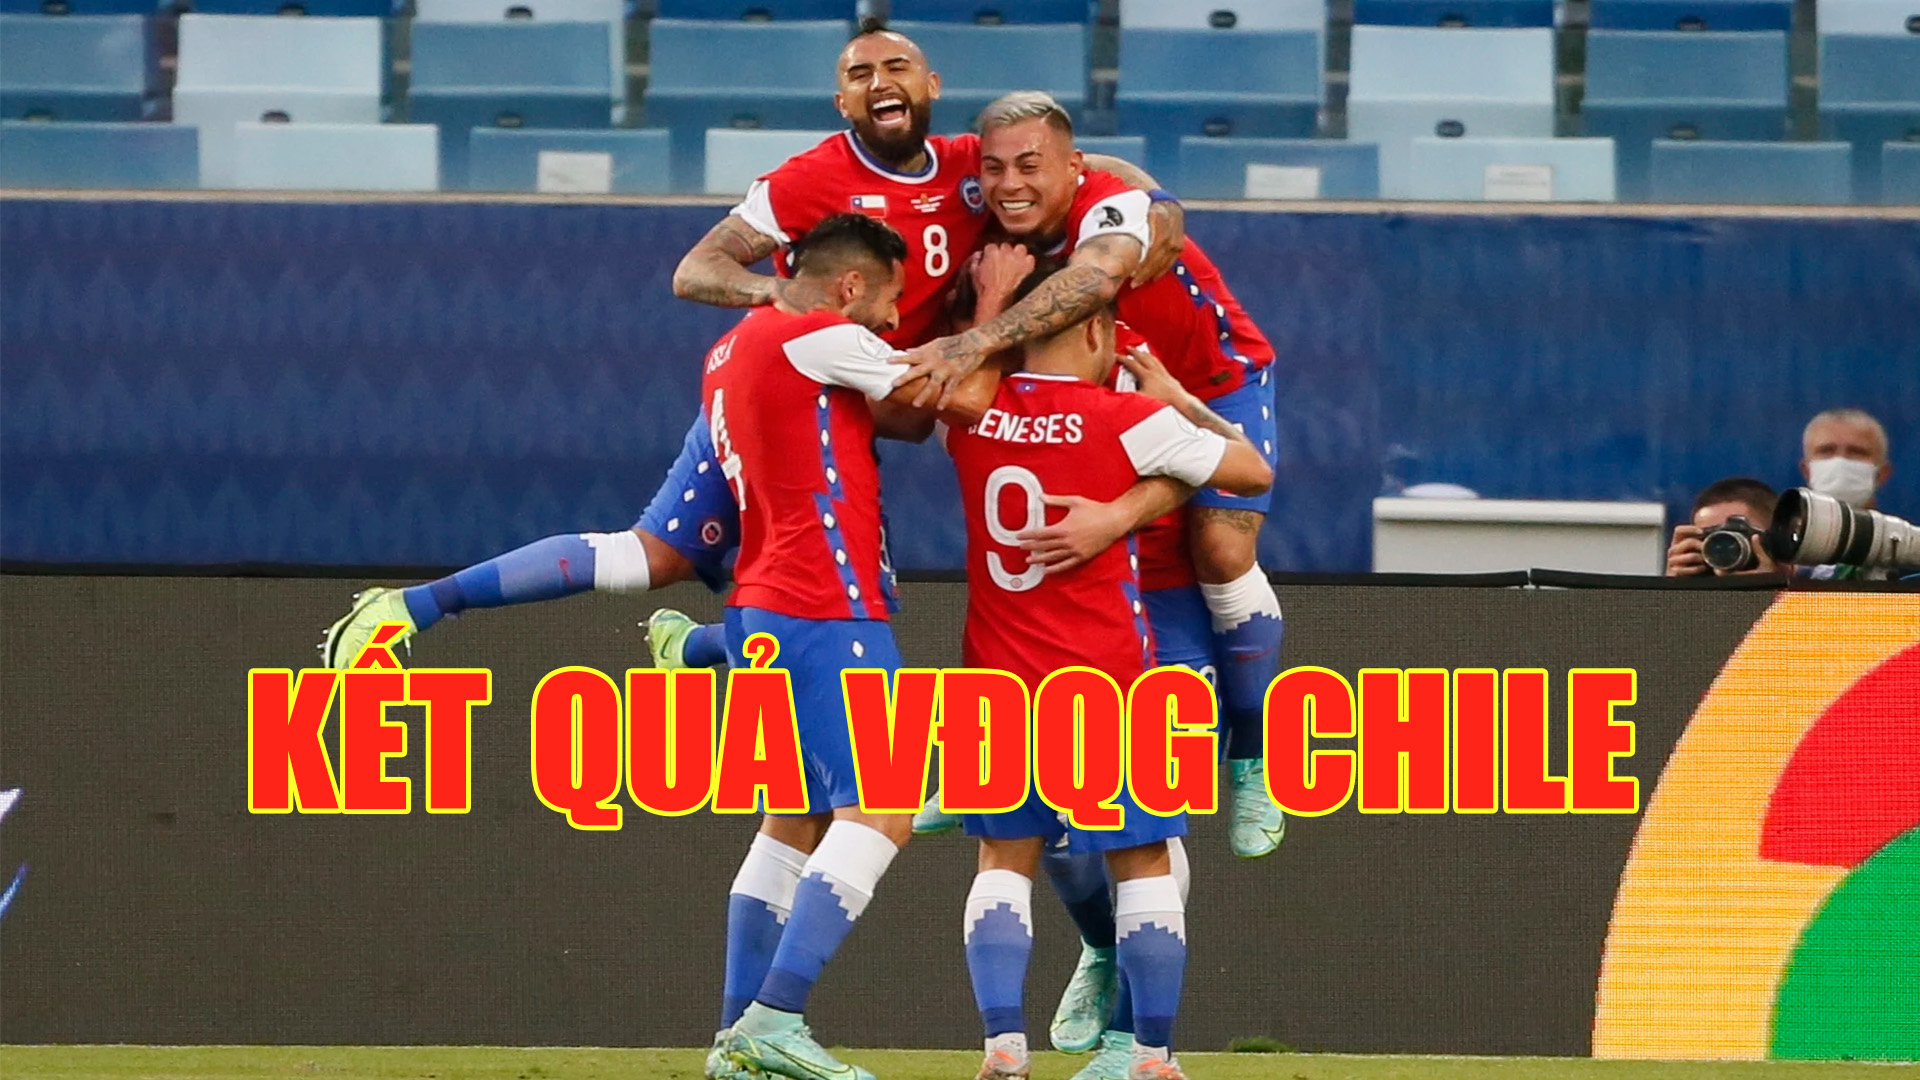 KQ Chile - Kết quả bóng đá Chile mới nhất